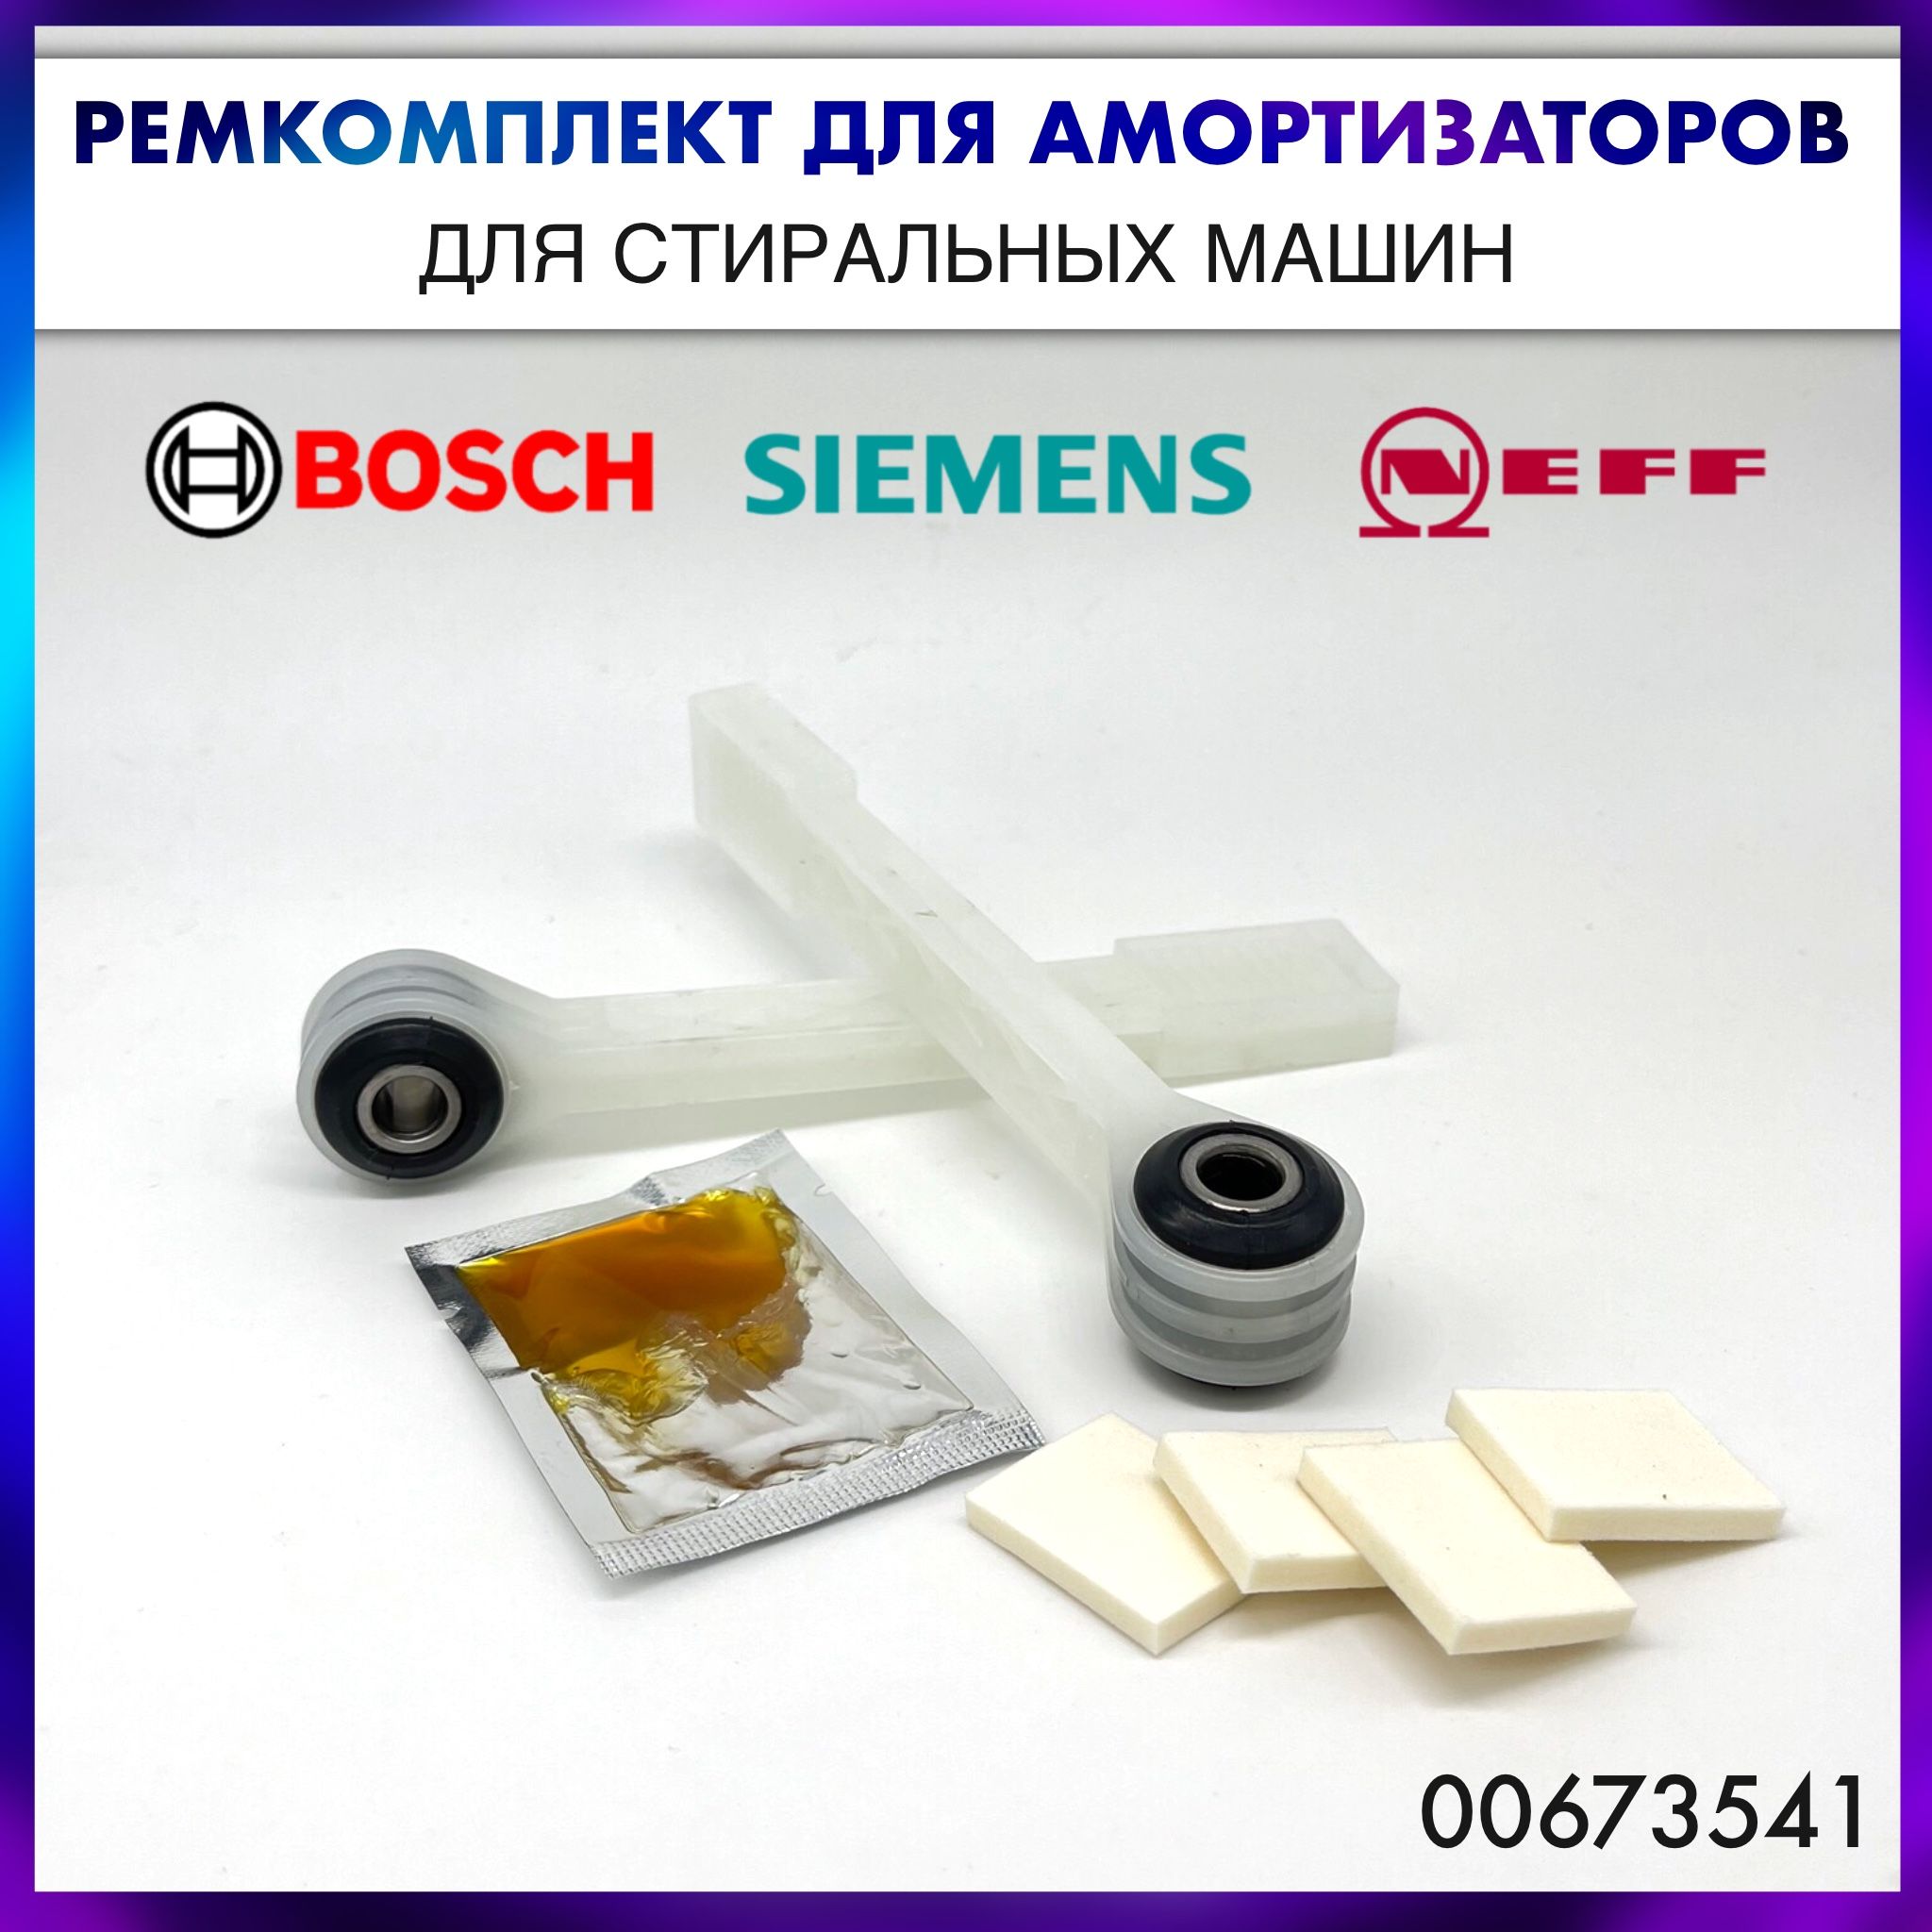 РемкомплектамортизаторовдлястиральноймашиныBosch,Siemens,Neff-00673541/673541